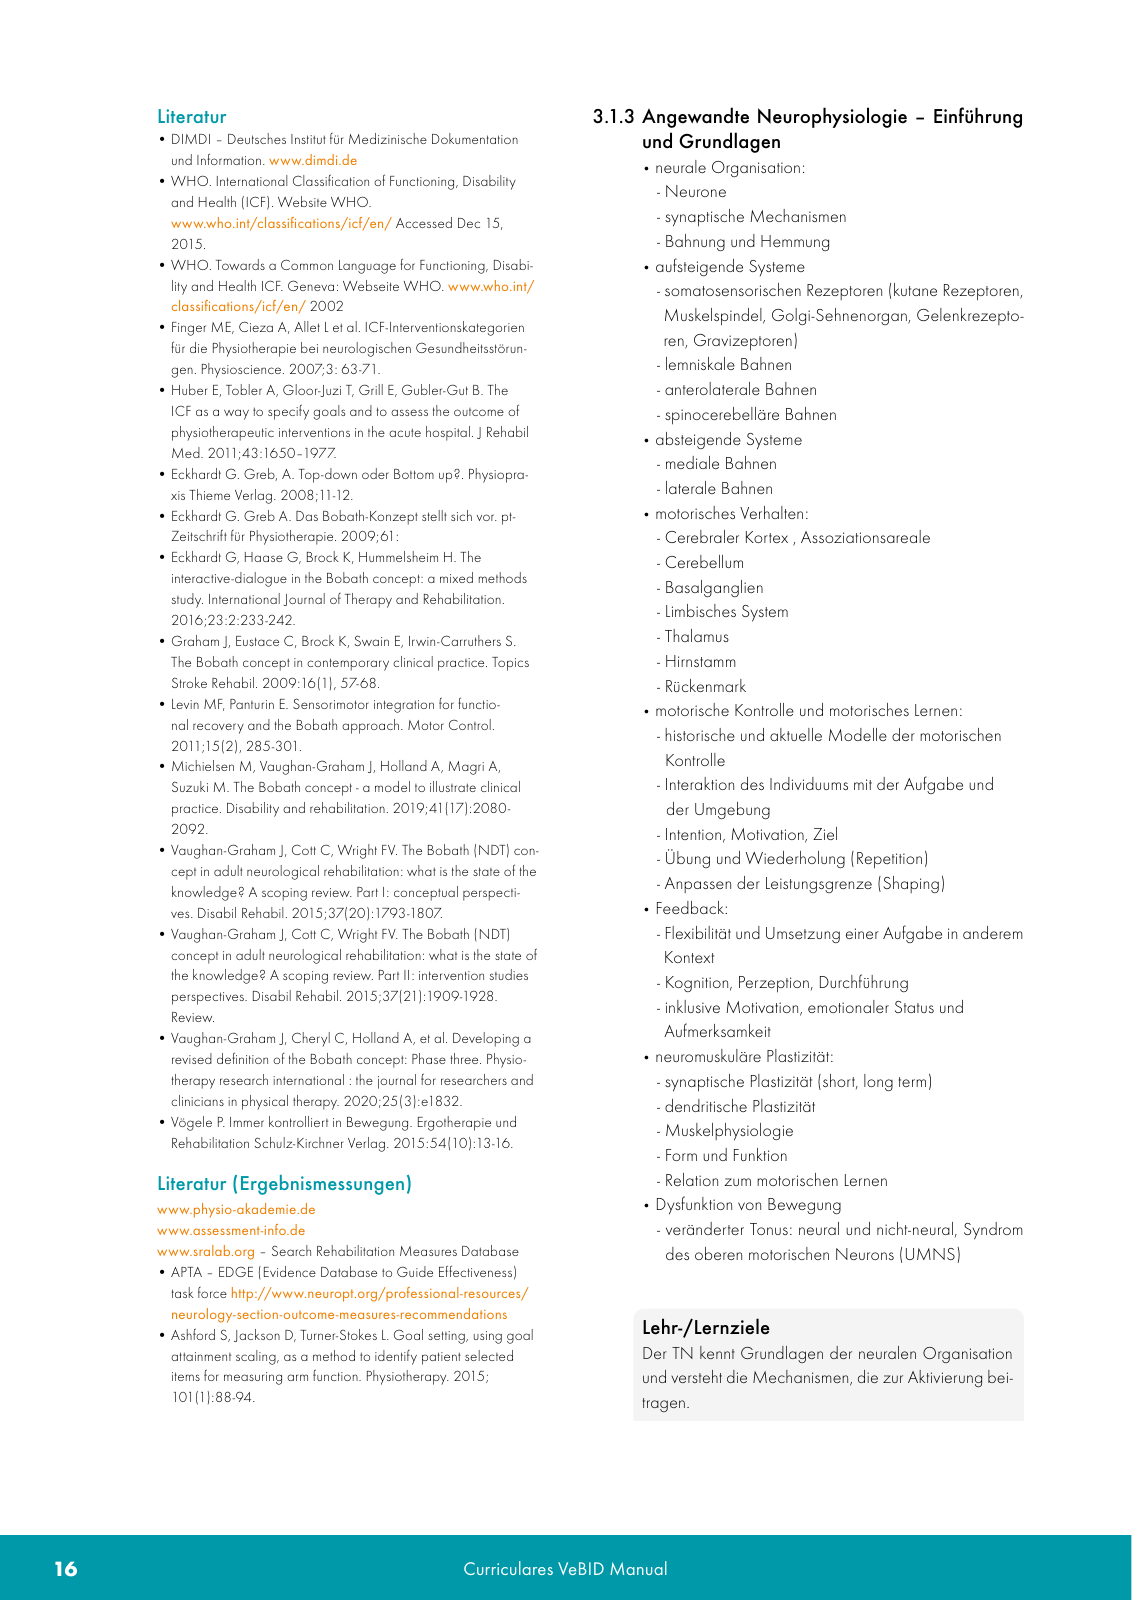 Vorschau VeBID Curriculum 2022 Seite 16